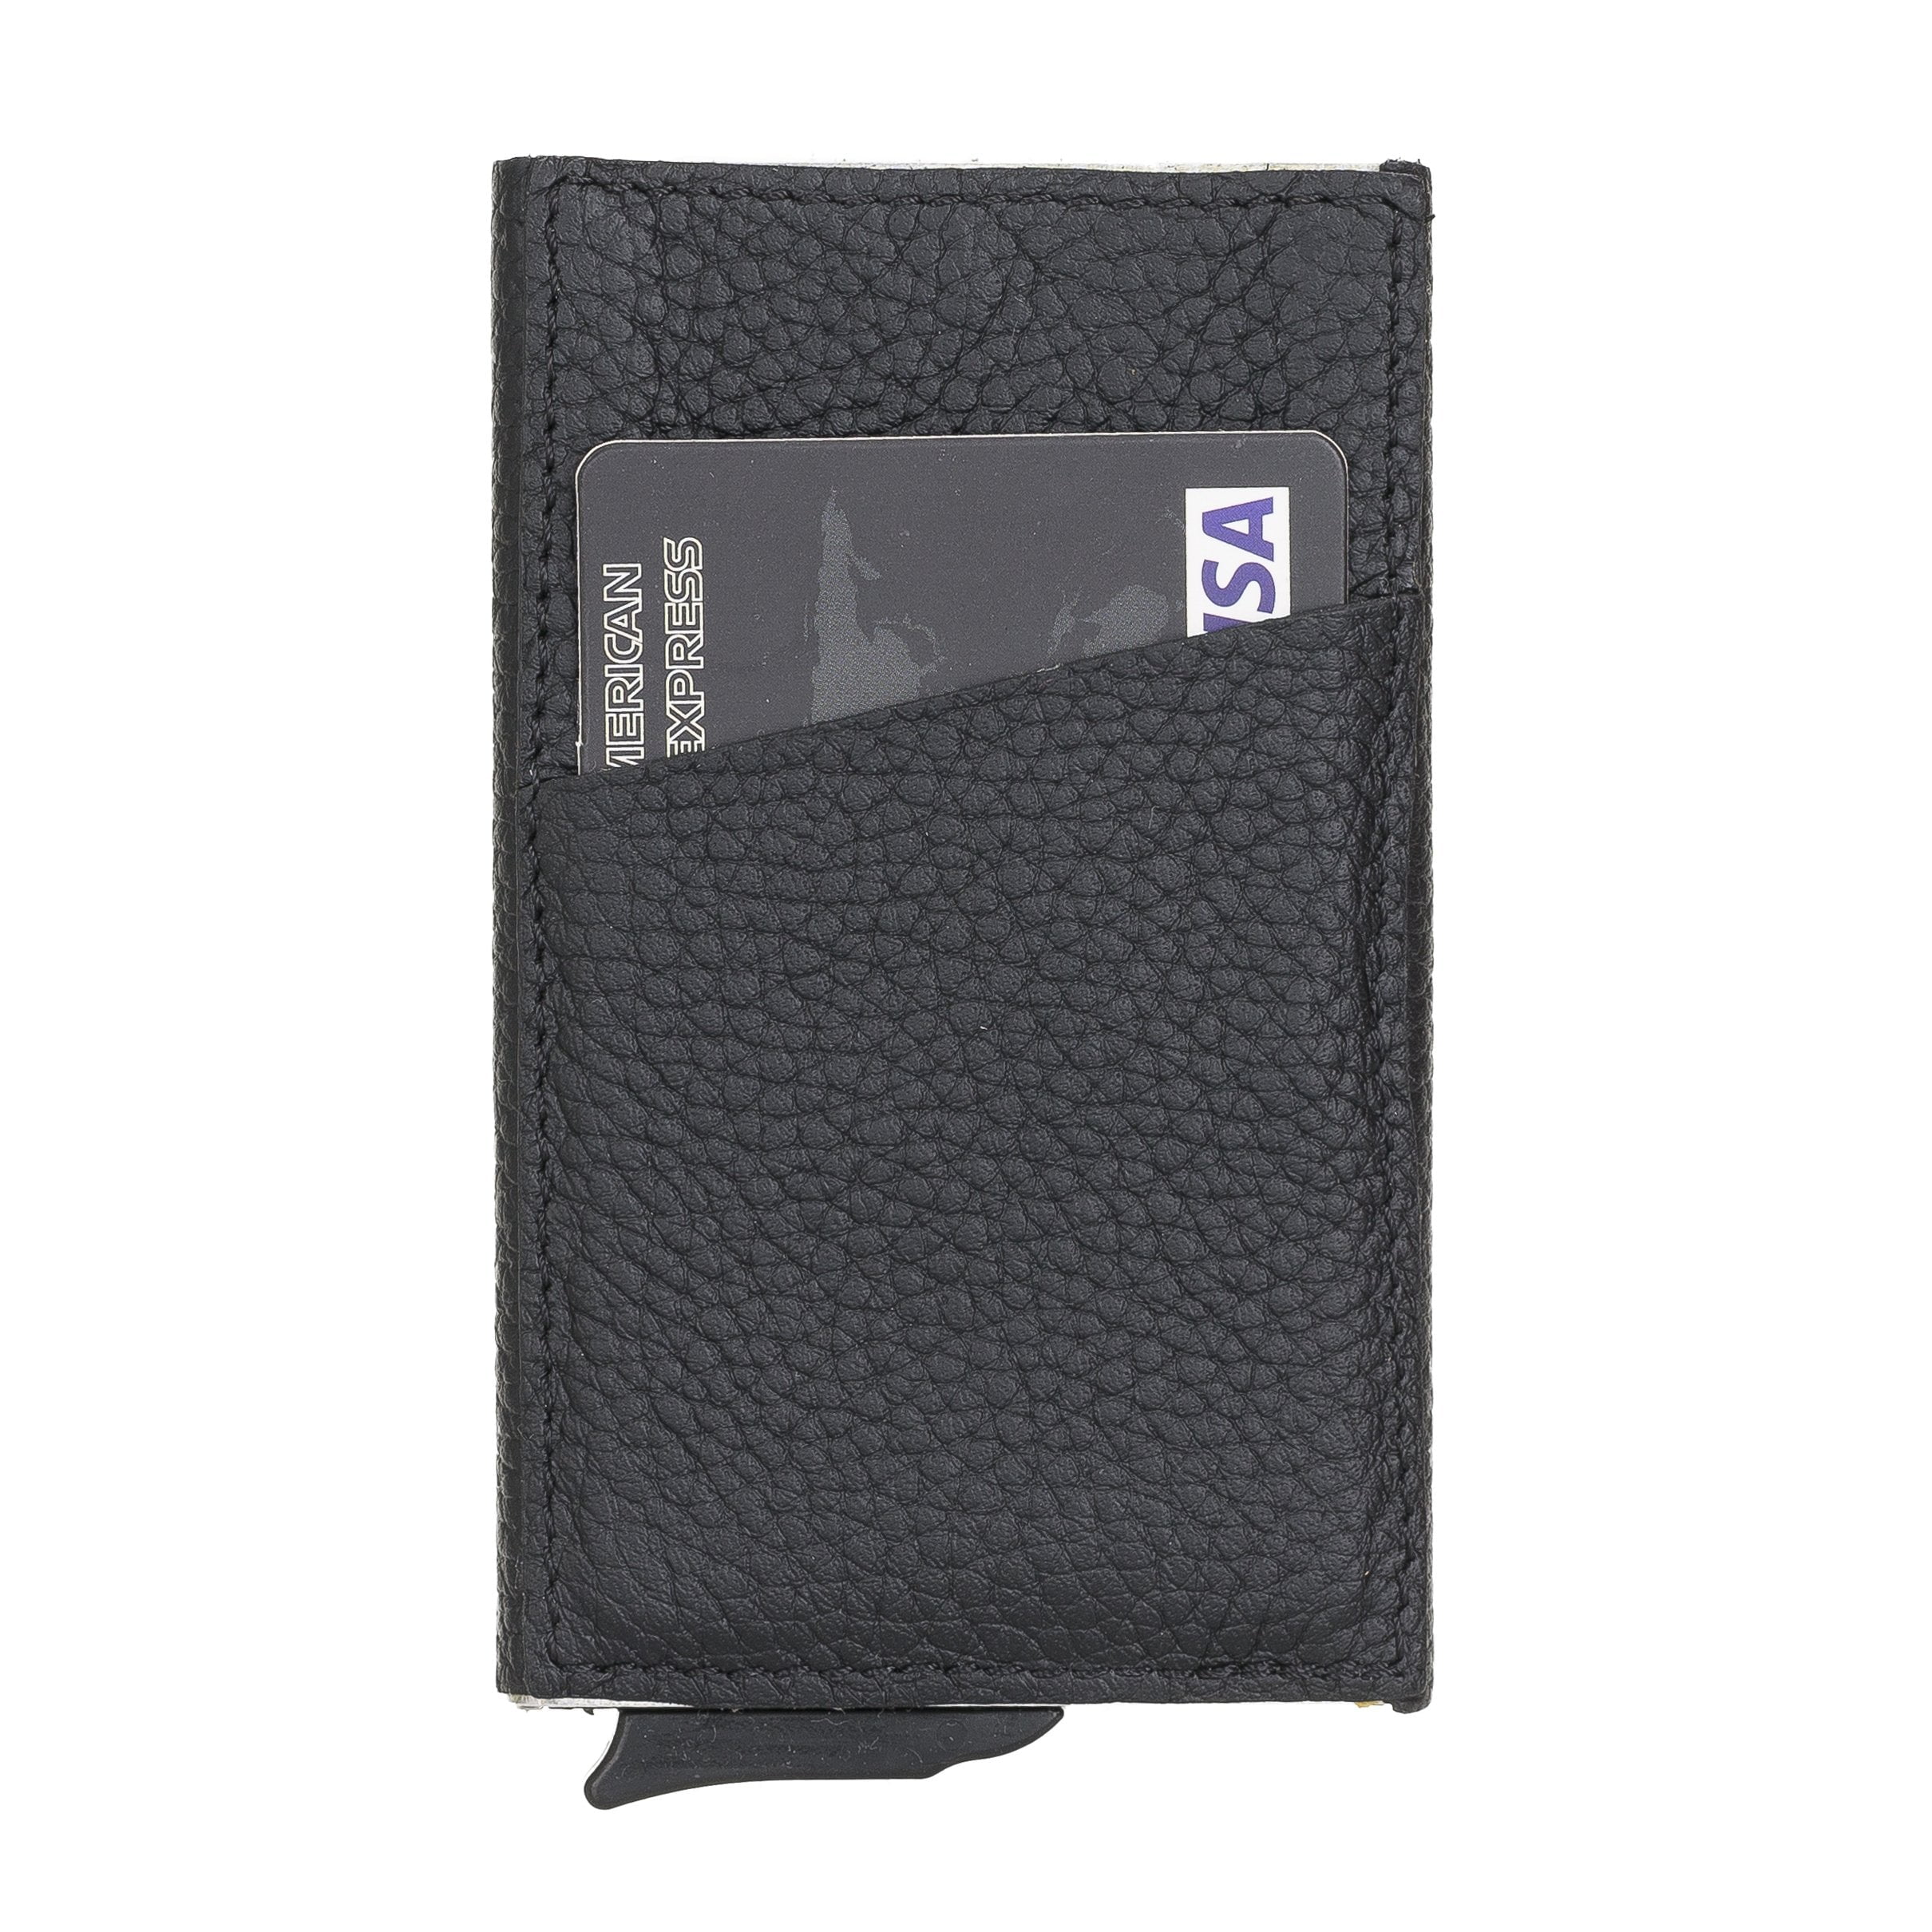 Slim Simple Credit Card Holder Details about   ICONIC Business Card Case Slit Card Holder 